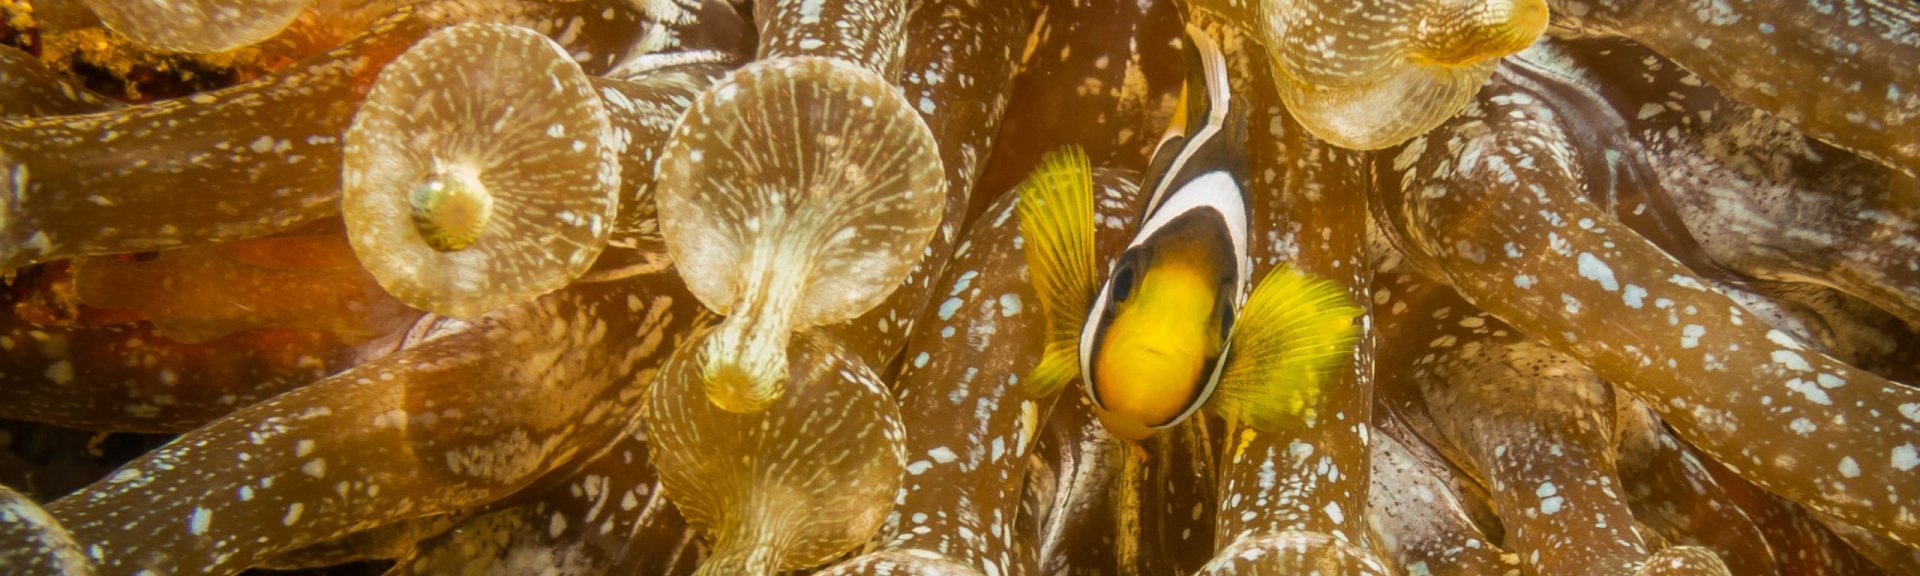 Clownfish in an anemone. Photo: [Wondrous World Images](https://www.wondrousworldimages.com.au)